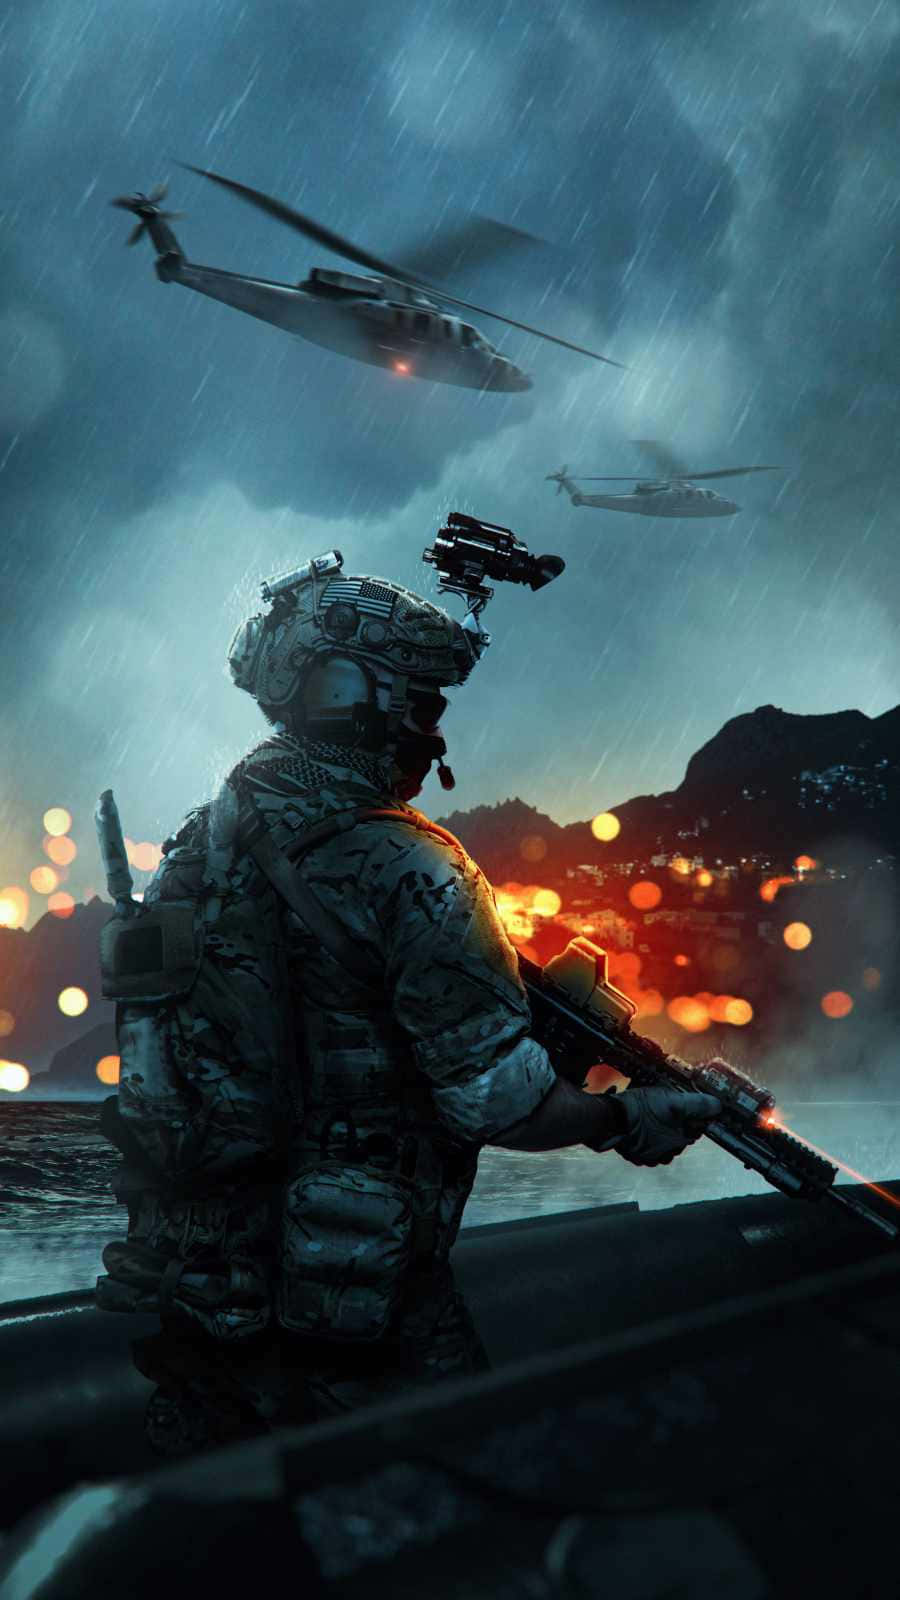 En soldat står foran en helikopter Wallpaper